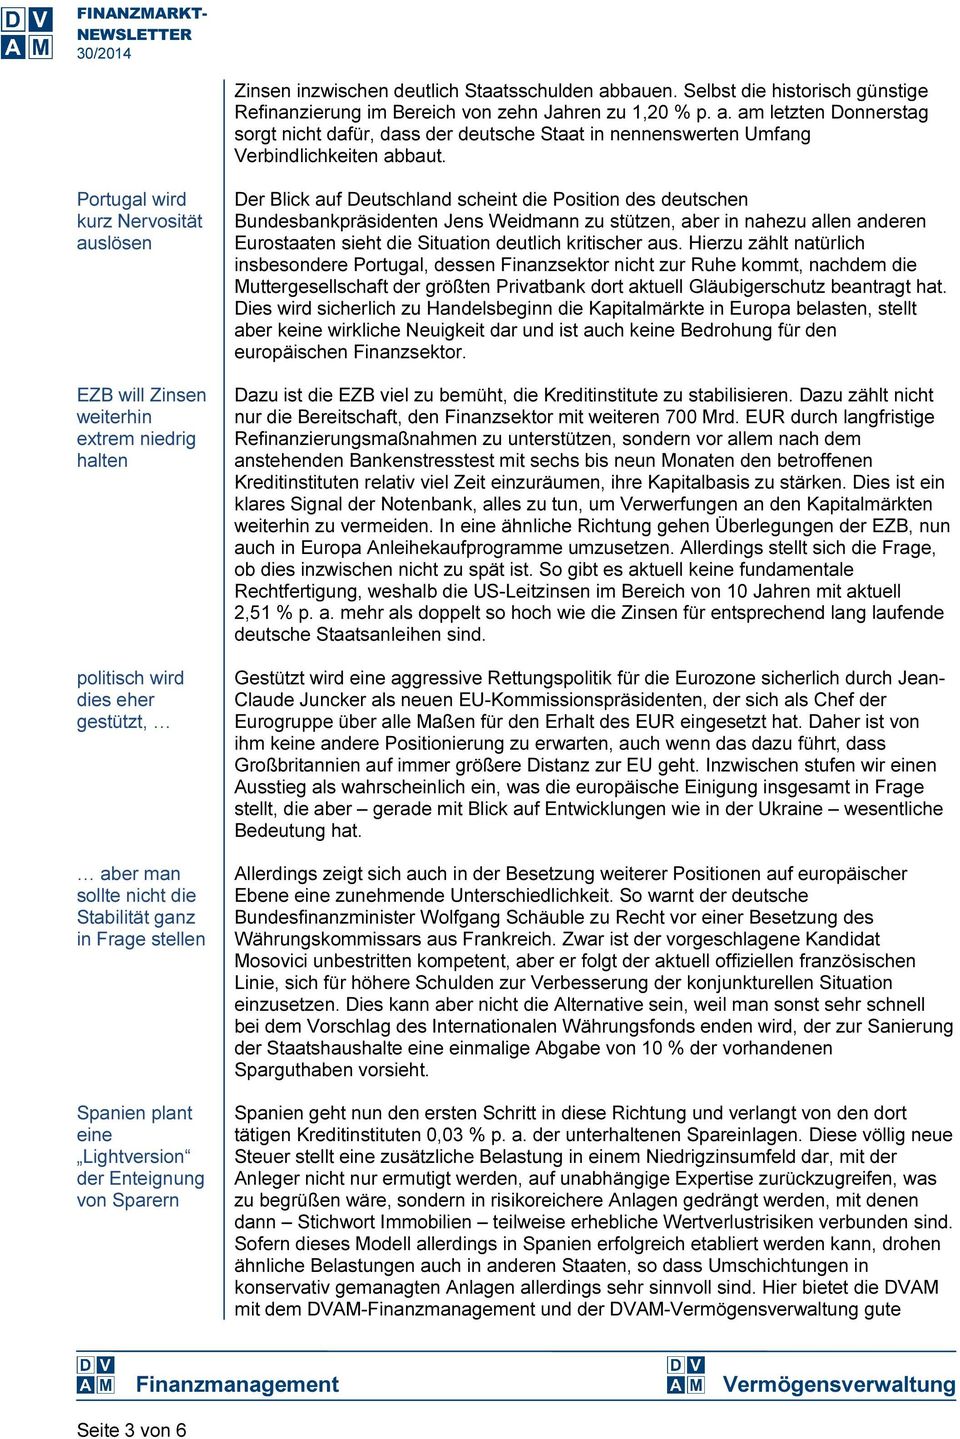 Lightversion der Enteignung von Sparern Der Blick auf Deutschland scheint die Position des deutschen Bundesbankpräsidenten Jens Weidmann zu stützen, aber in nahezu allen anderen Eurostaaten sieht die